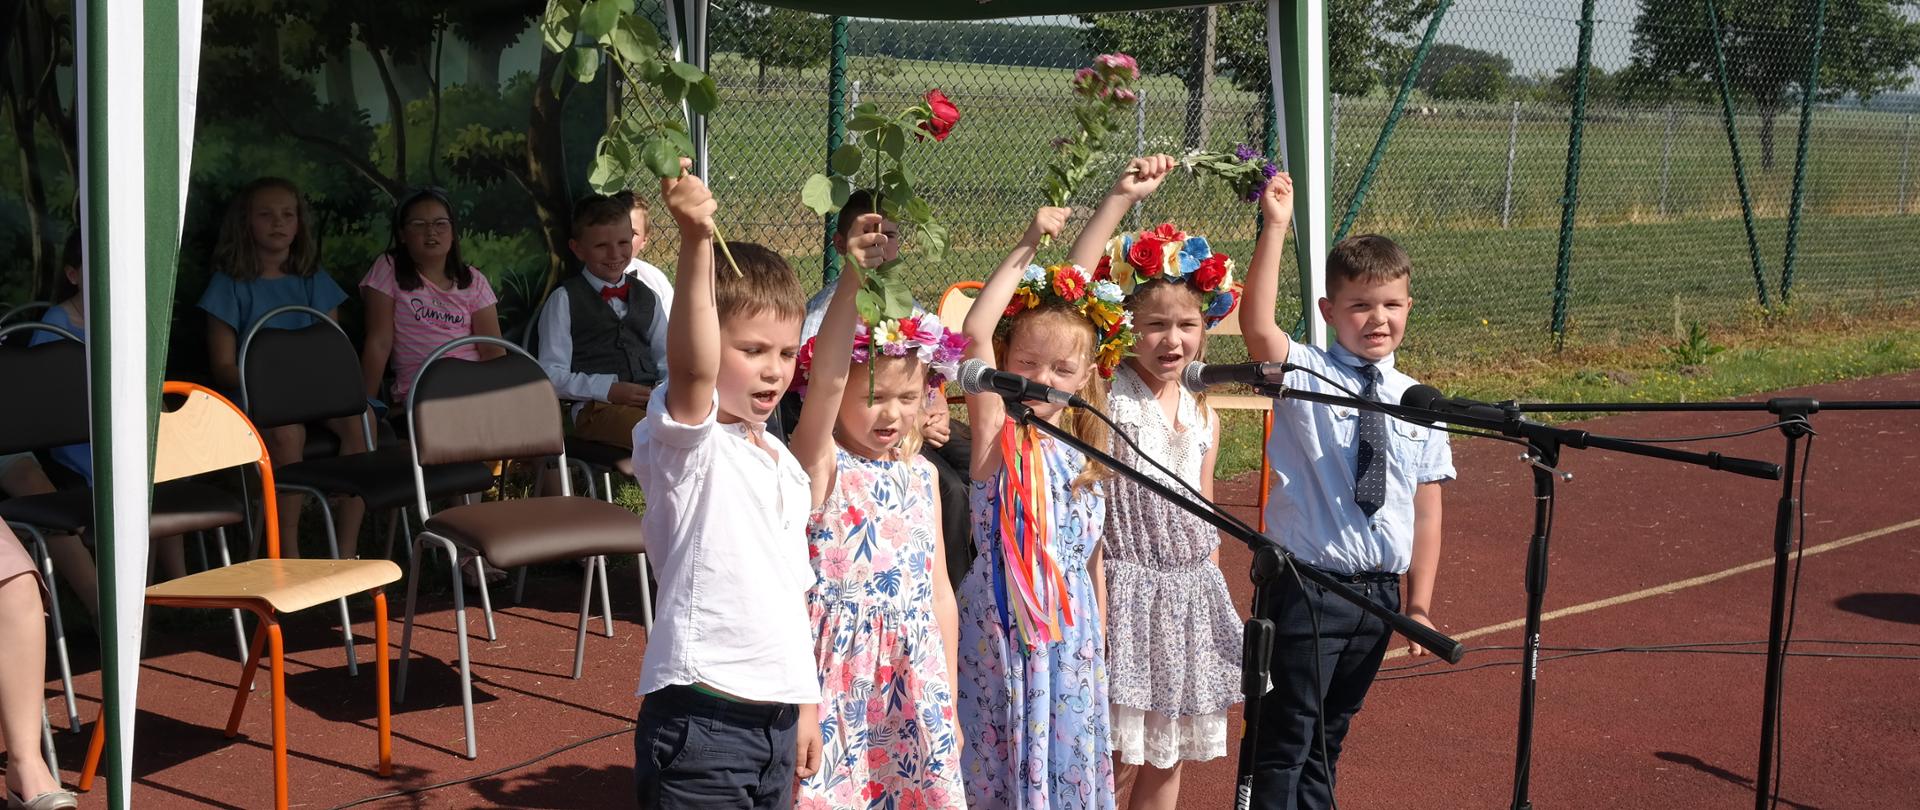 Najmłodsza grupa wokalna w składzie pięcioosobowym, w plenerze, wykonuje piosenkę pt. "Idzie wiosna. dzieci kolorowo ubrane z wiankami na głowie.